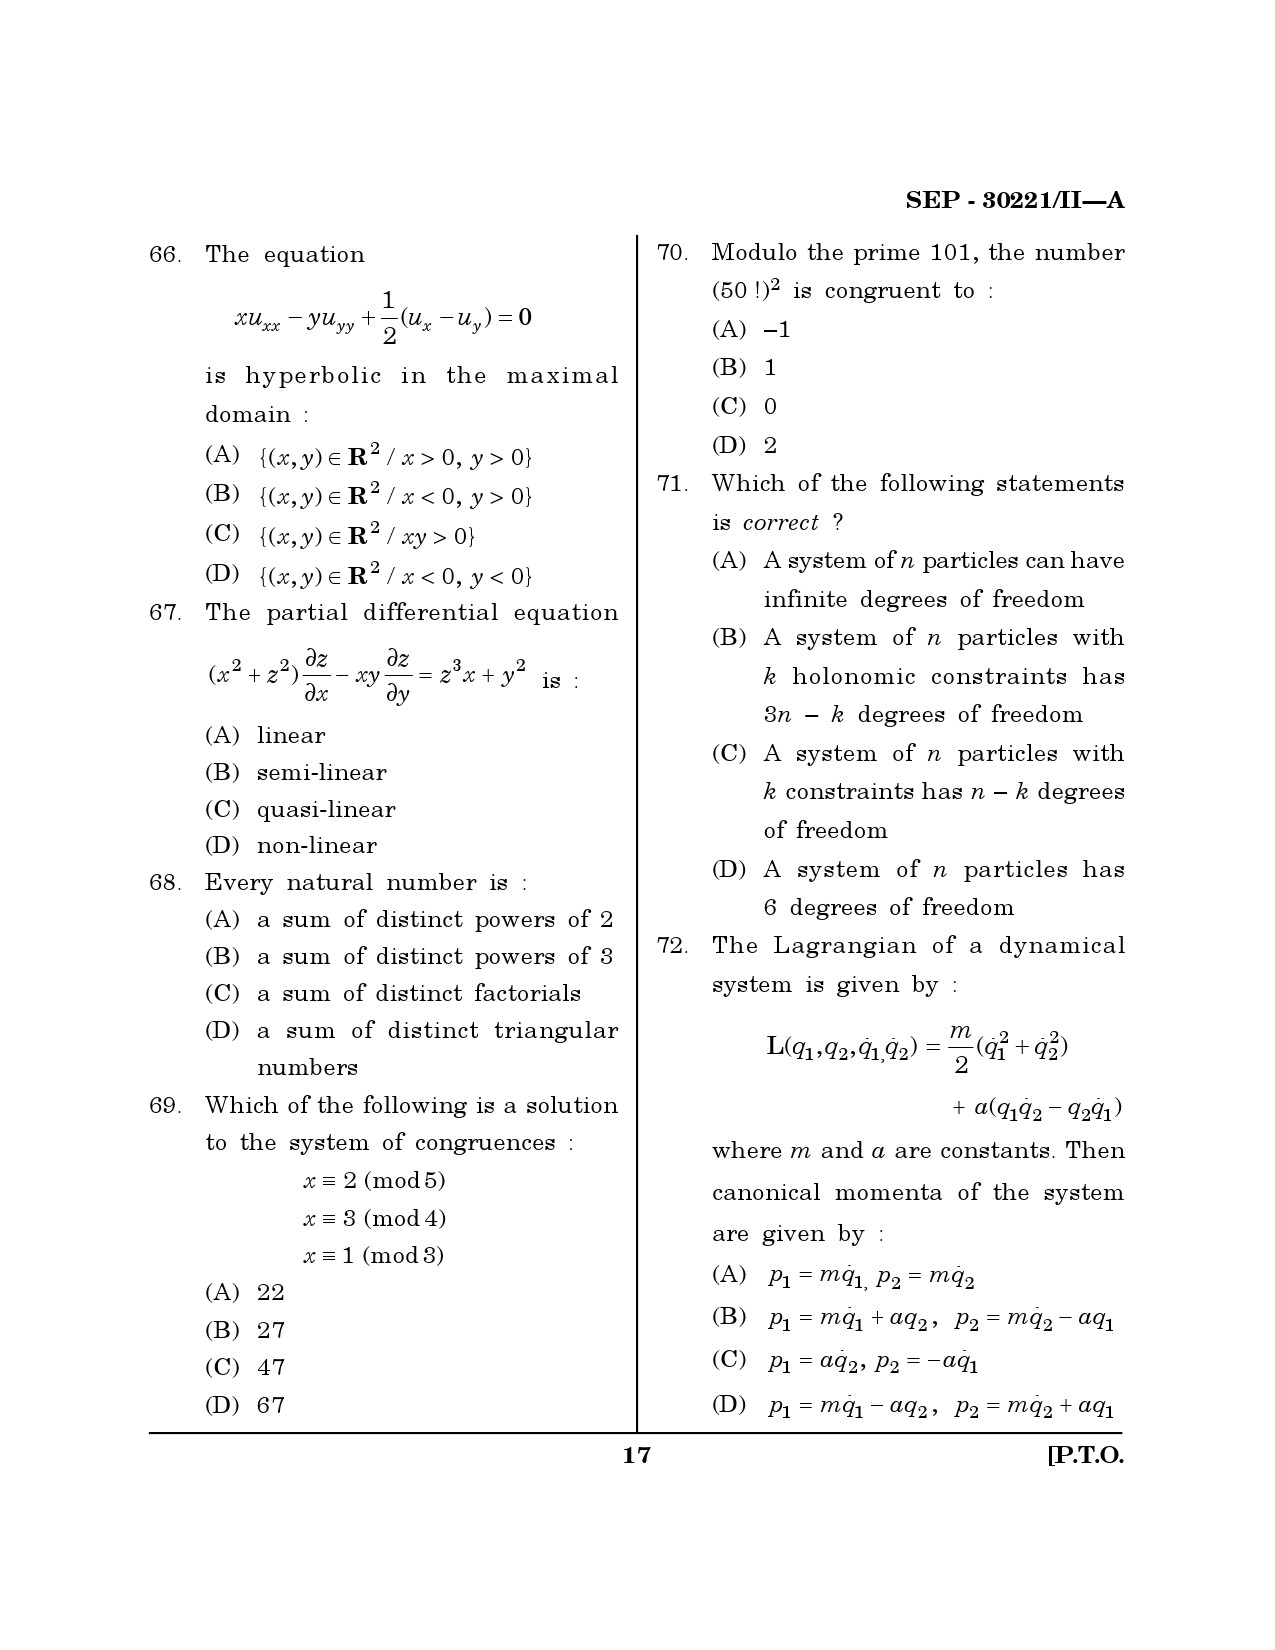 Maharashtra SET Mathematical Sciences Exam Question Paper September 2021 16